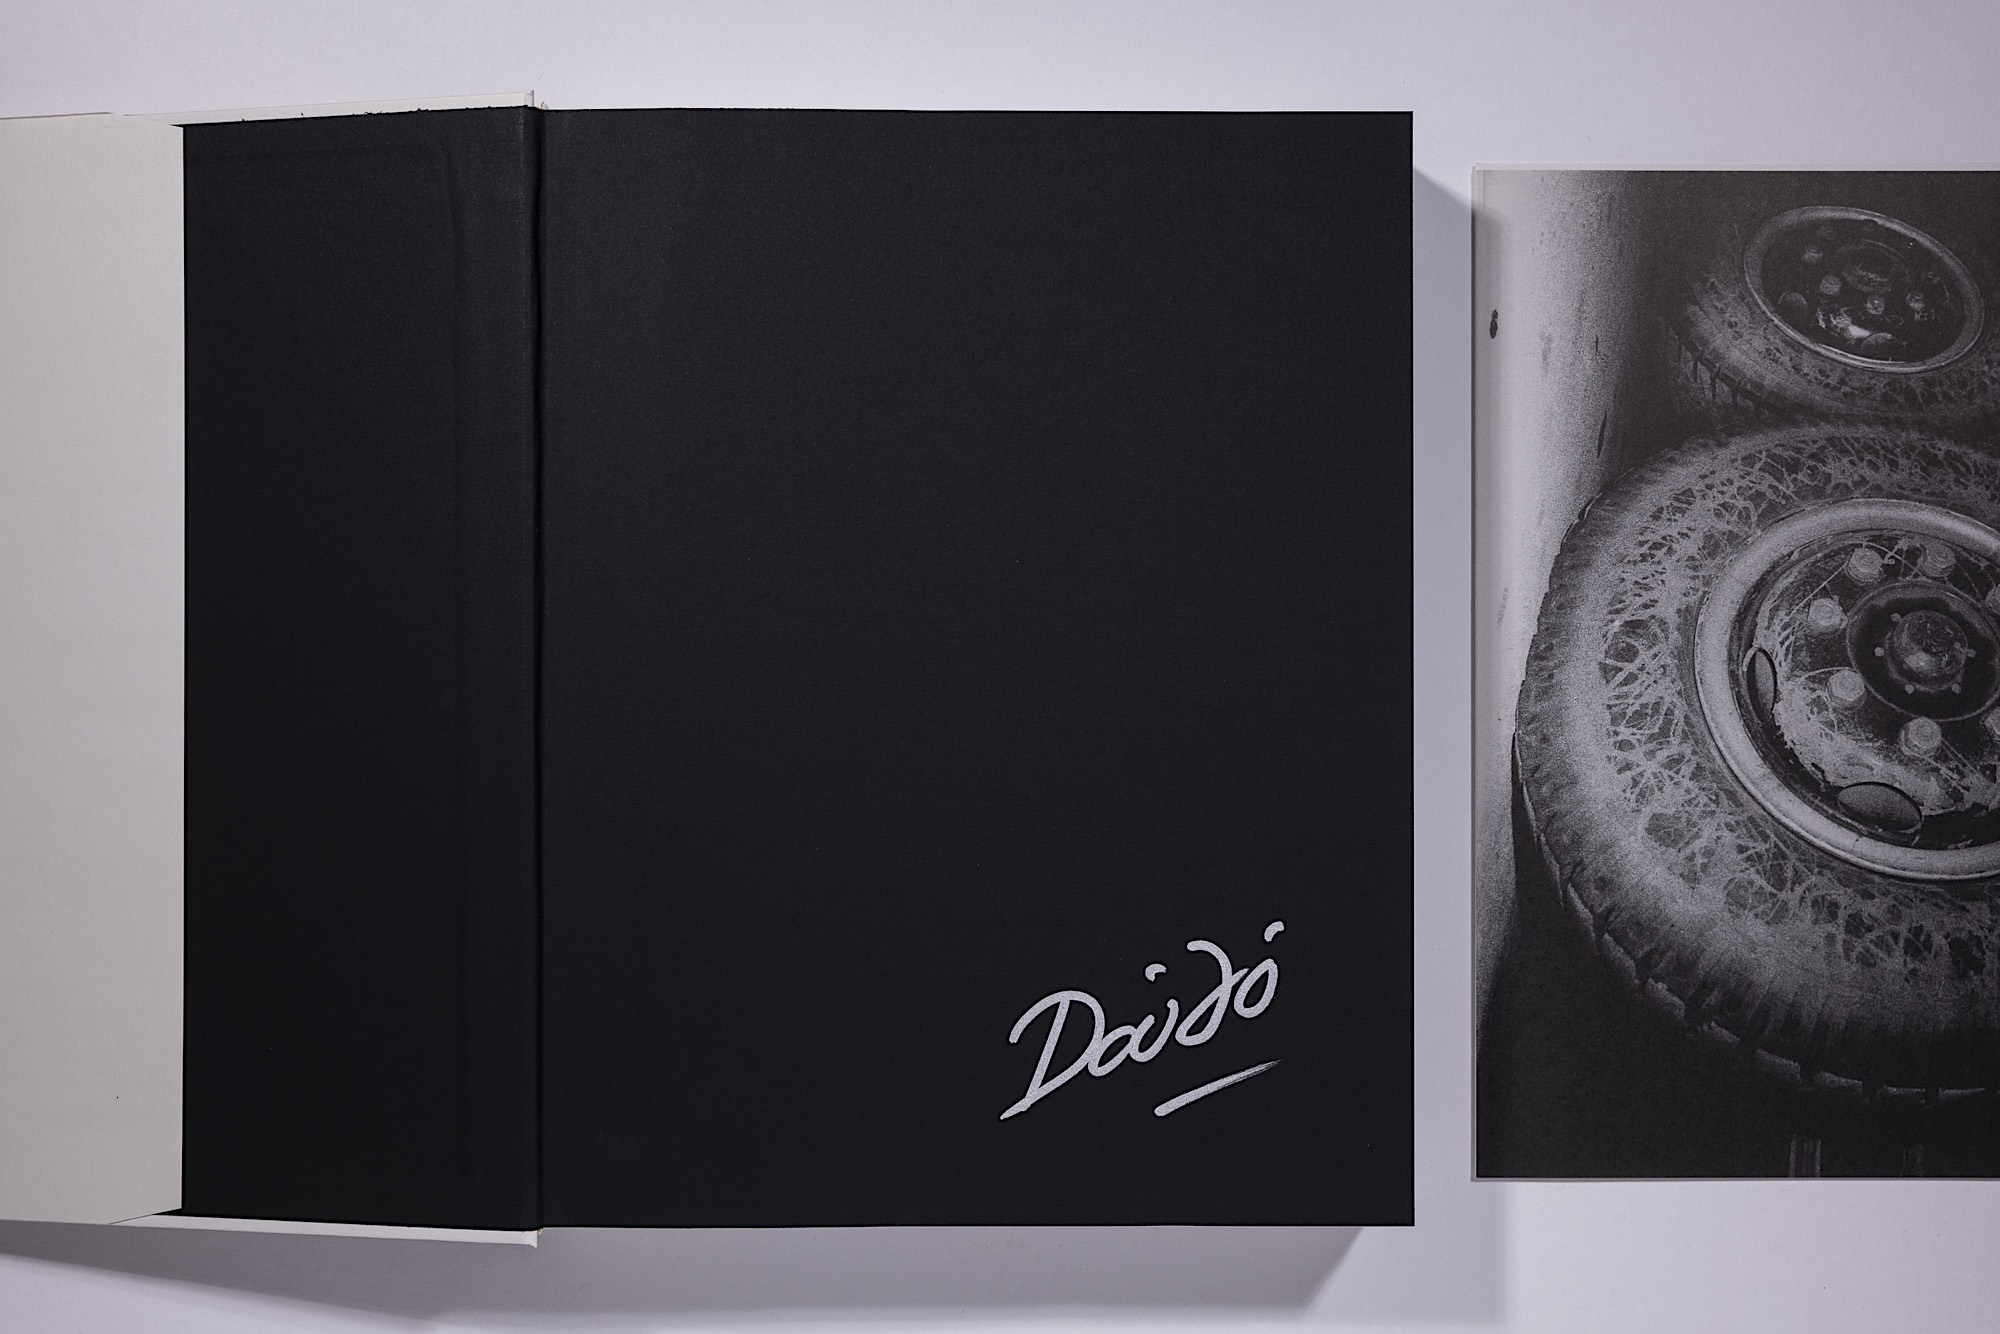 Daido Moriyama - The Complete Works of Daido Moriyama Image 9